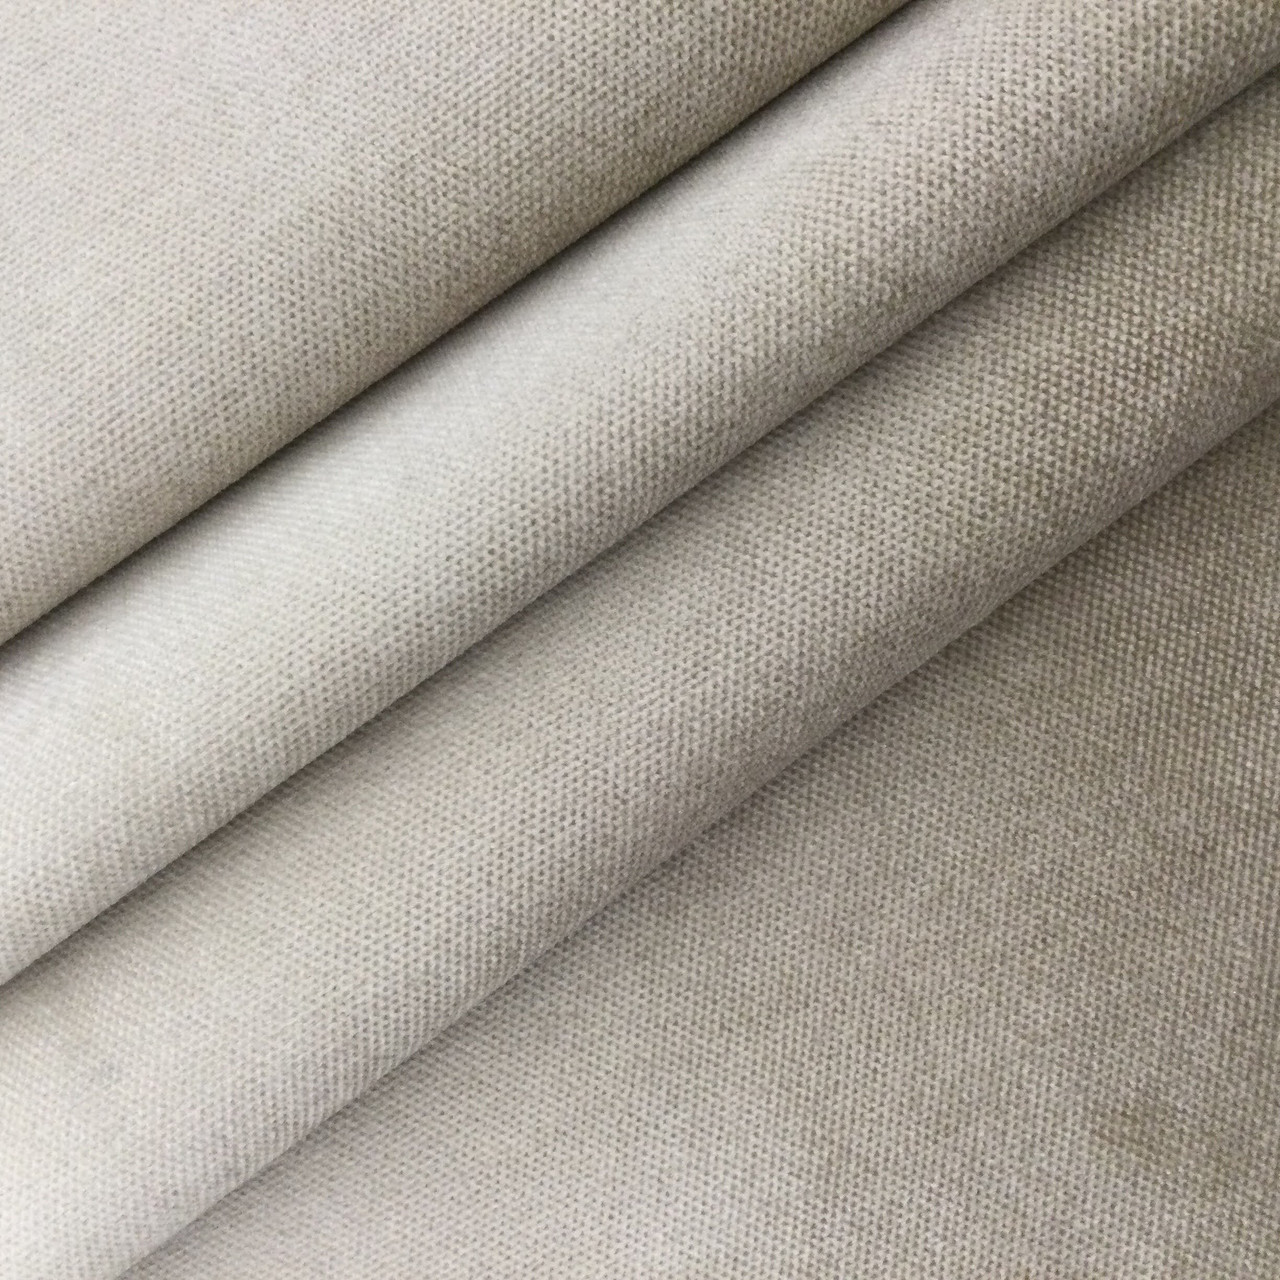 Light Tan | Boxer Velvet Upholstery Fabric | Home Decor | 54 Wide | BTY |  Soft